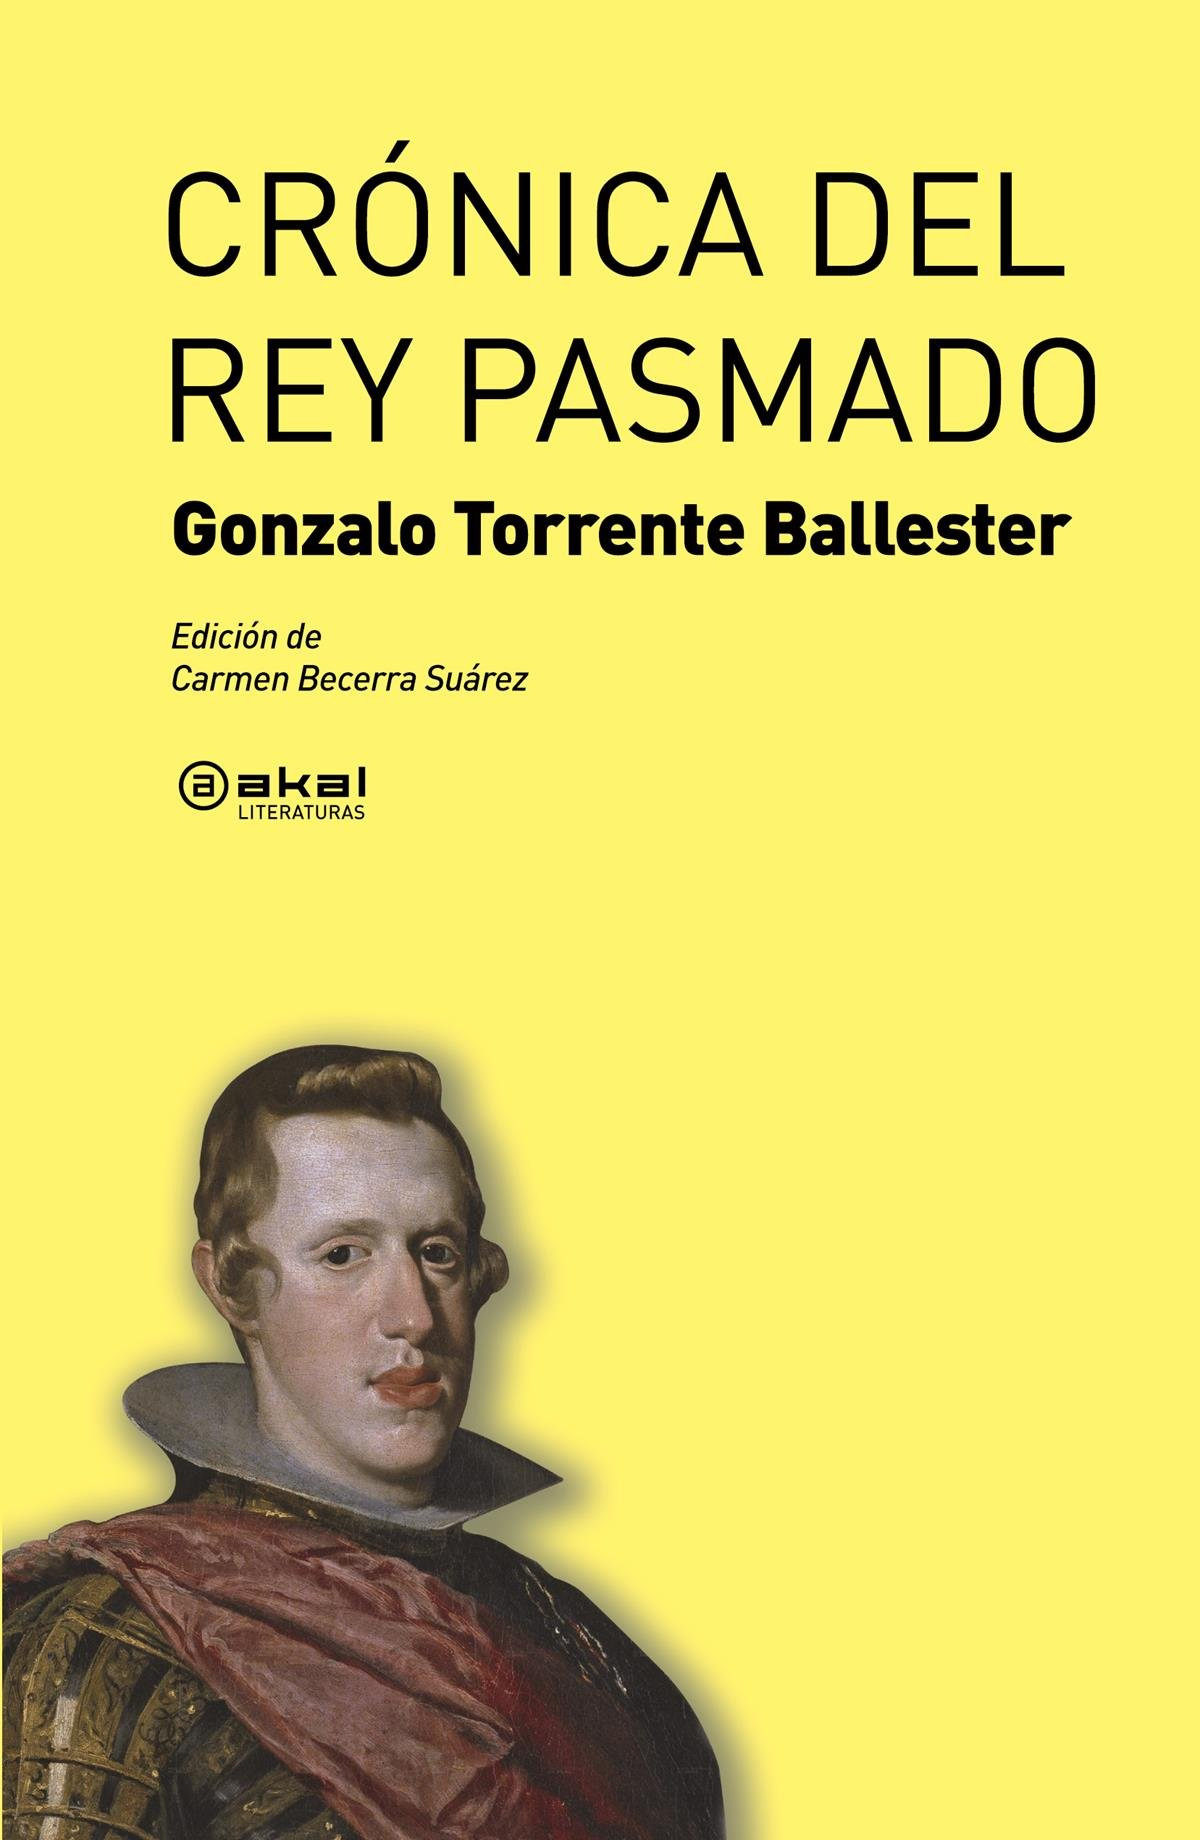 Crónica del rey pasmado - Torrente Ballester, Gonzalo